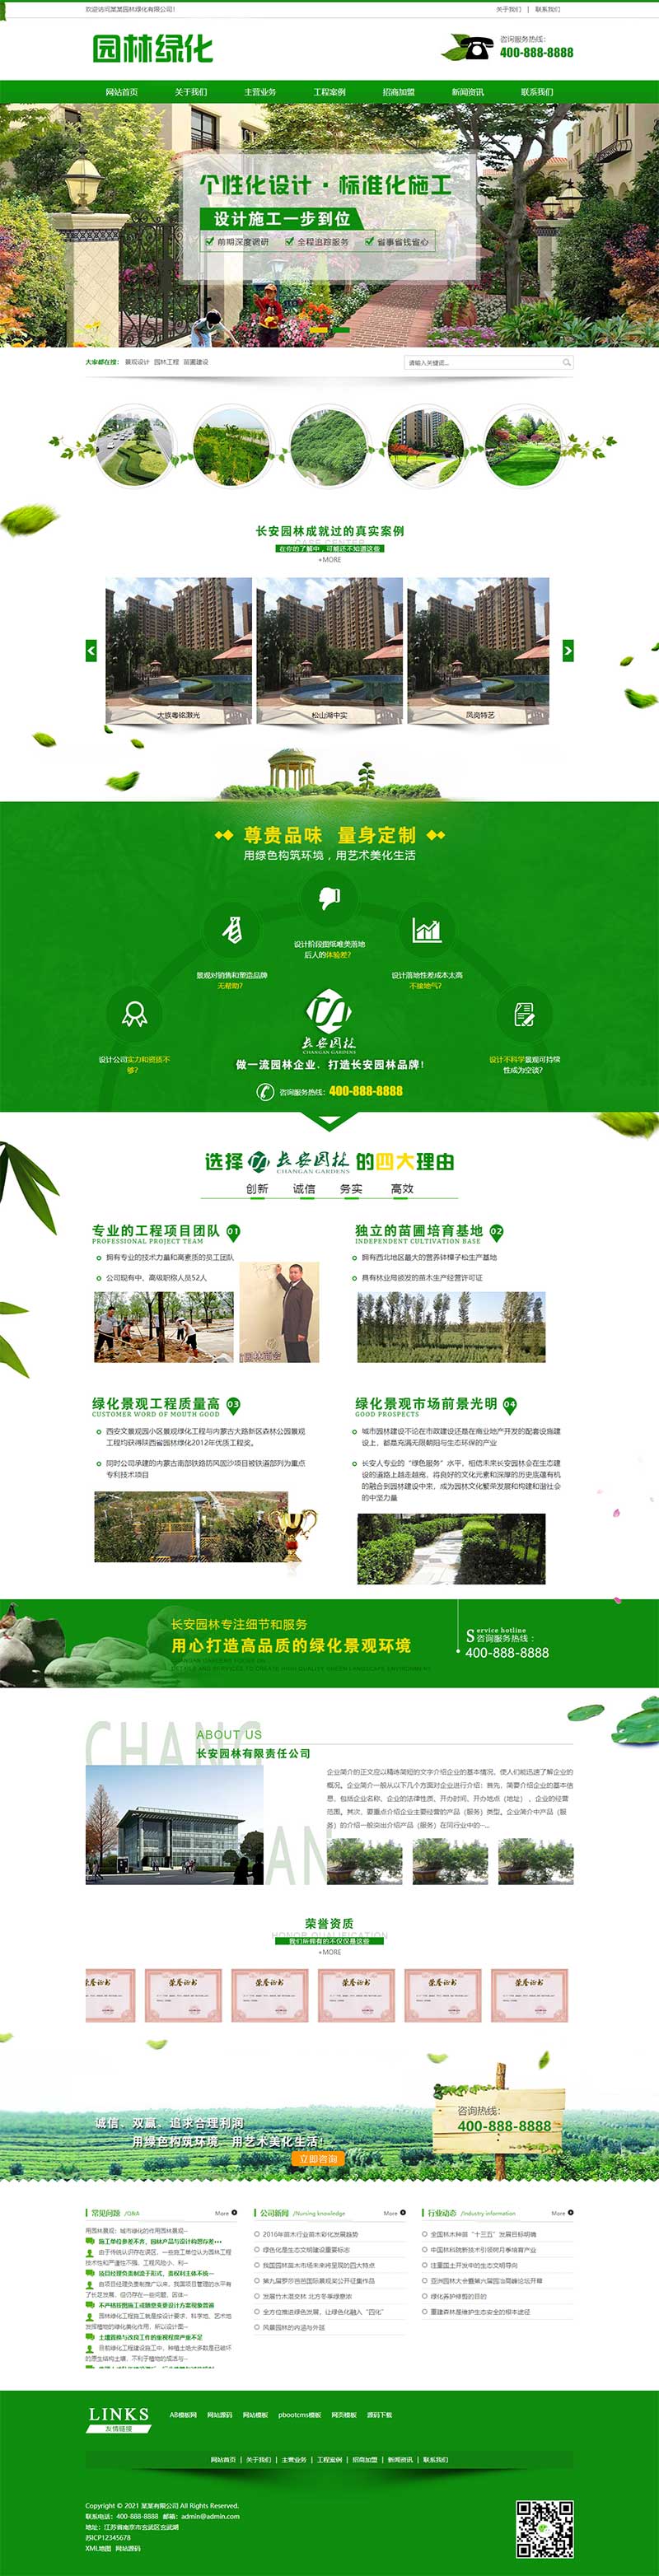 (PC+WAP)绿色清新园林绿化园林设计园林工程网站电脑端模板展示图片